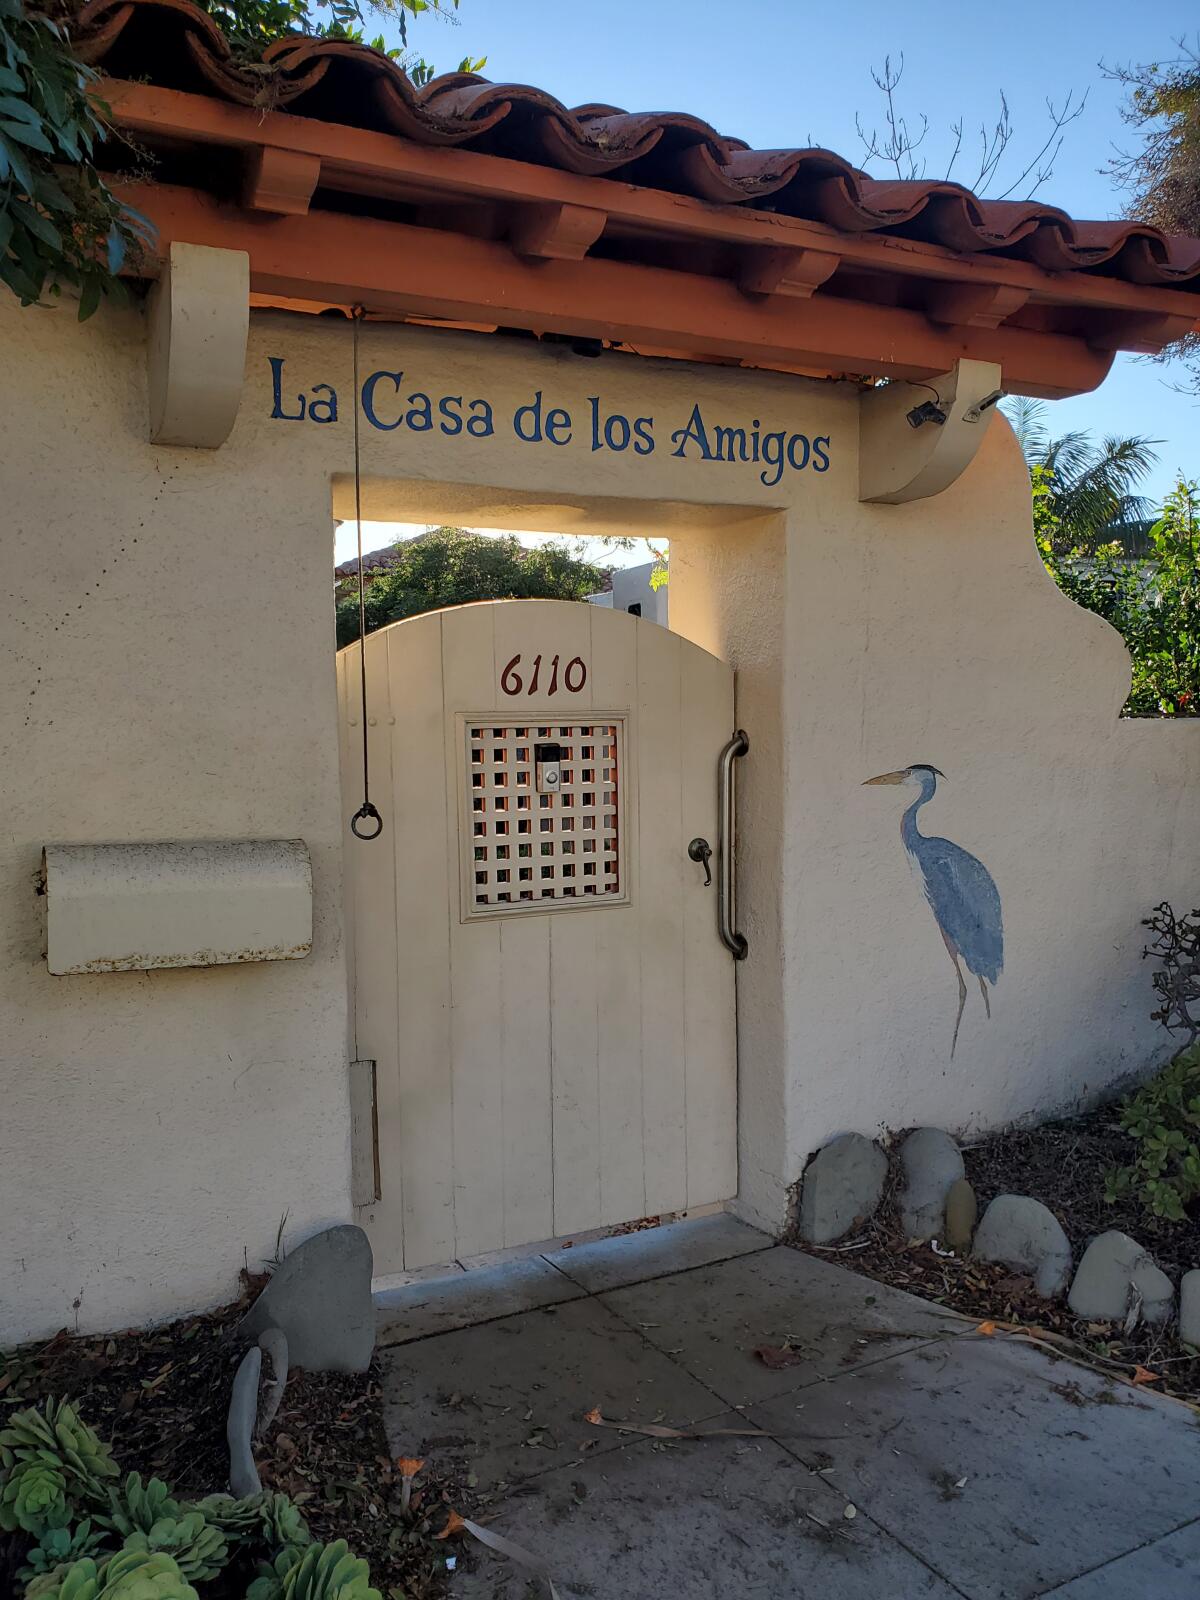 Little of La Casa de los Amigos at 6110 Camino de la Costa is visible from the street, except for a decorative entryway.